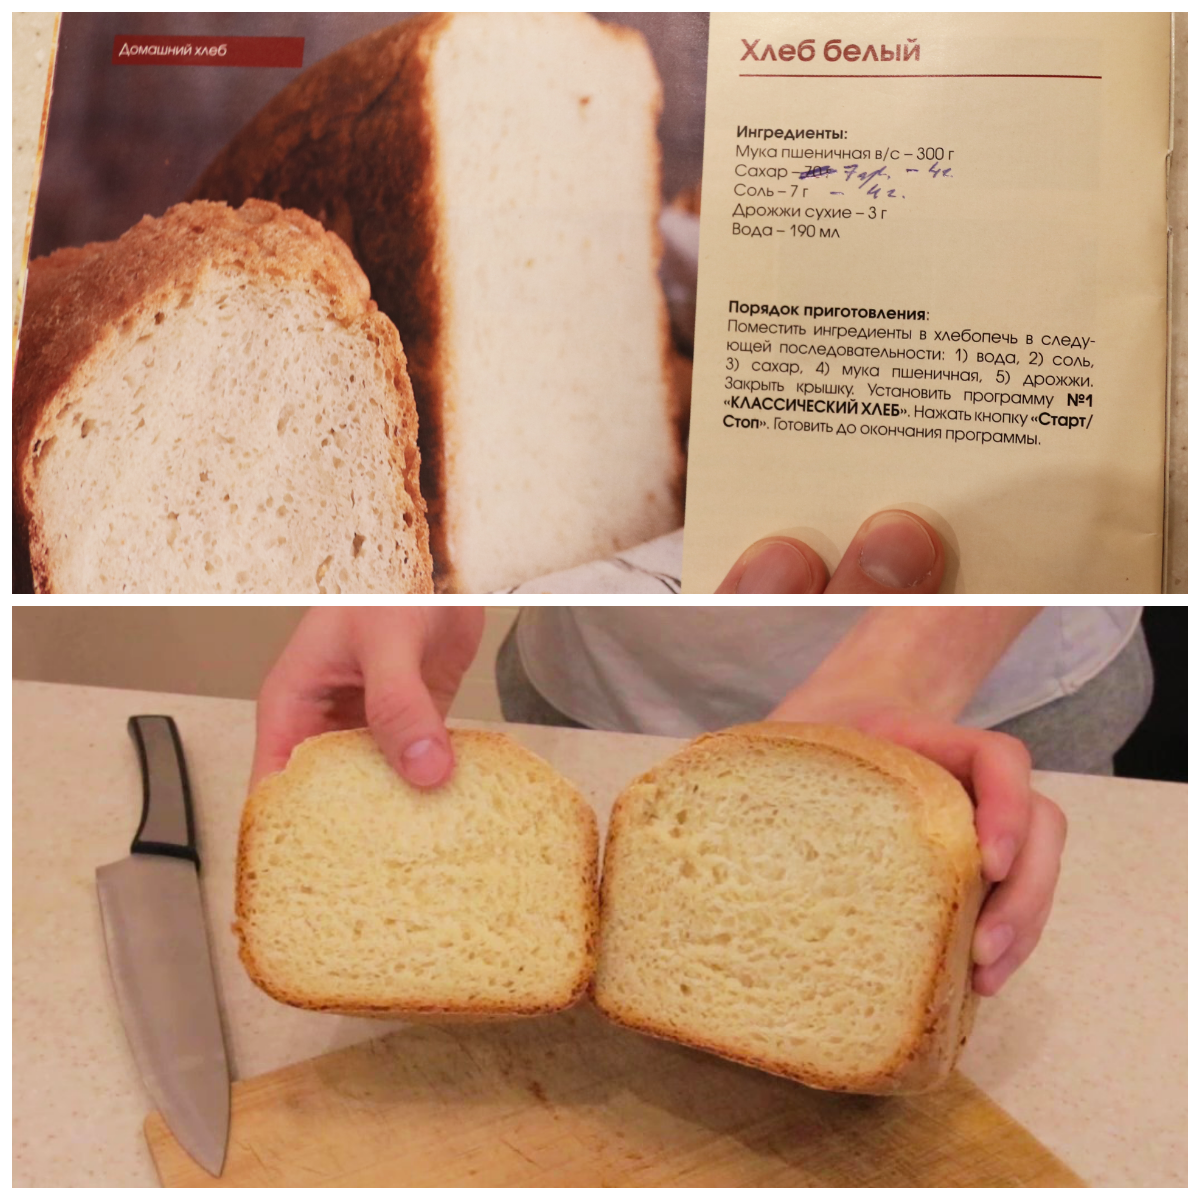 Хлеб в хлебопечке. Рецепт хлеба. Хлеб из хлебопечки. Рецепт хлеба в хлебопечке. Рецепты пошагово хлеба в хлебопечке